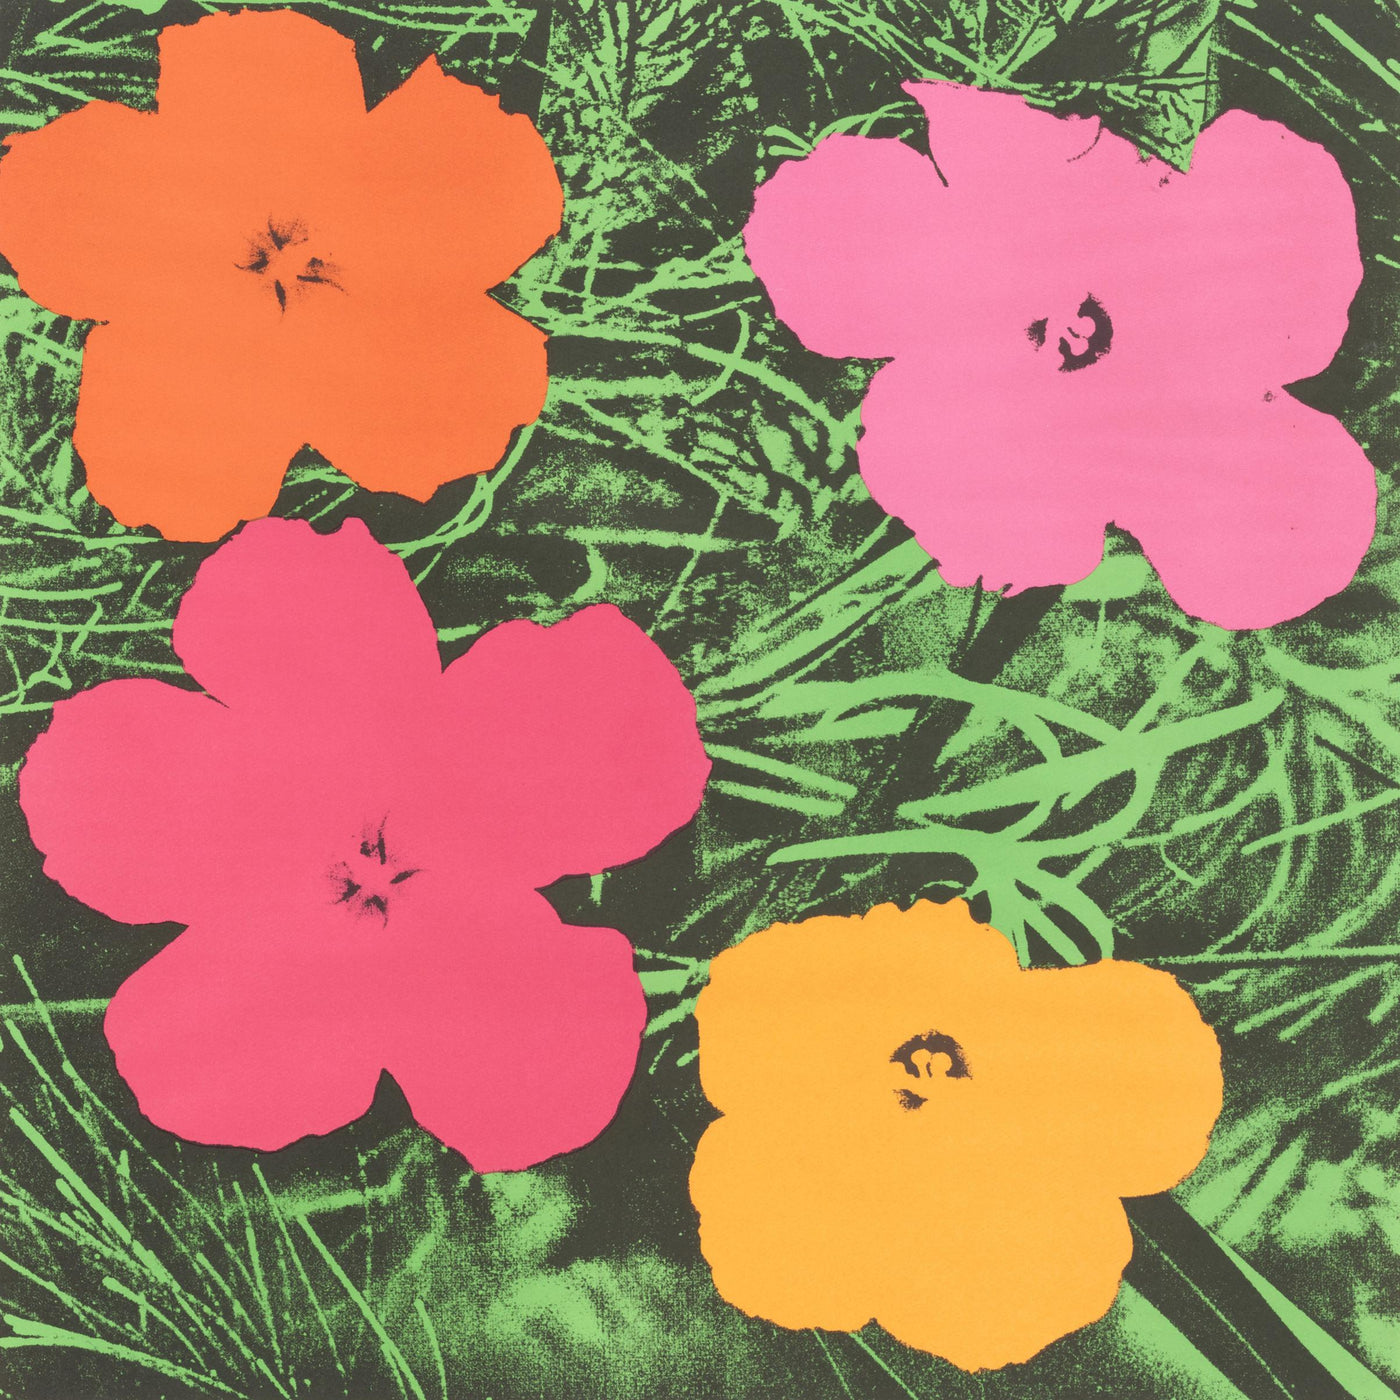 Andy Warhol Flowers (Feldman II.6) 1964